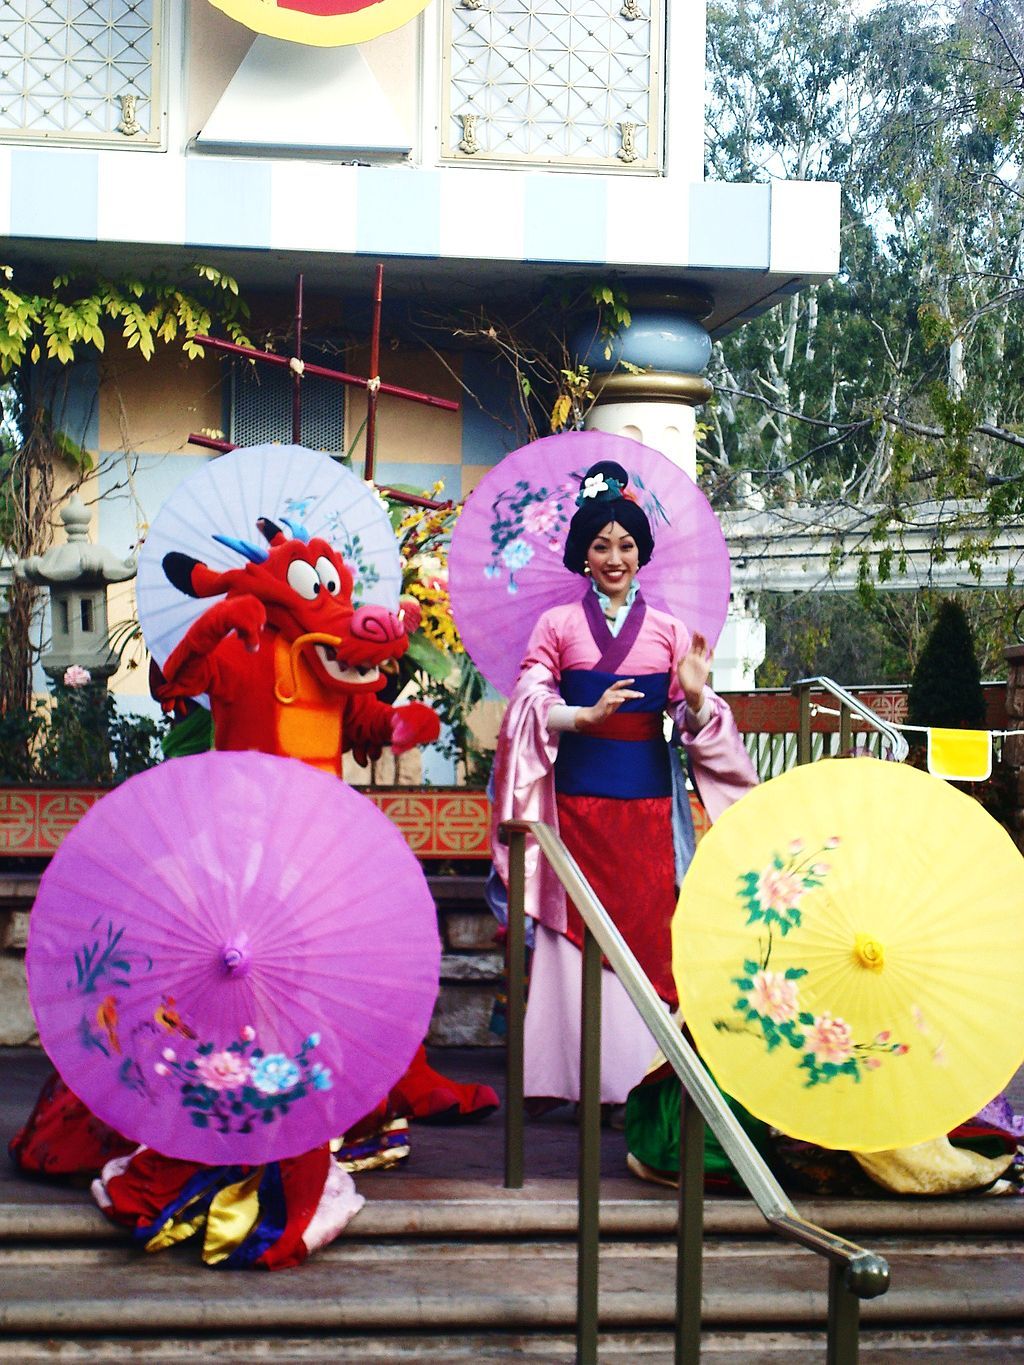 Mulan and Mushu at Disneyland